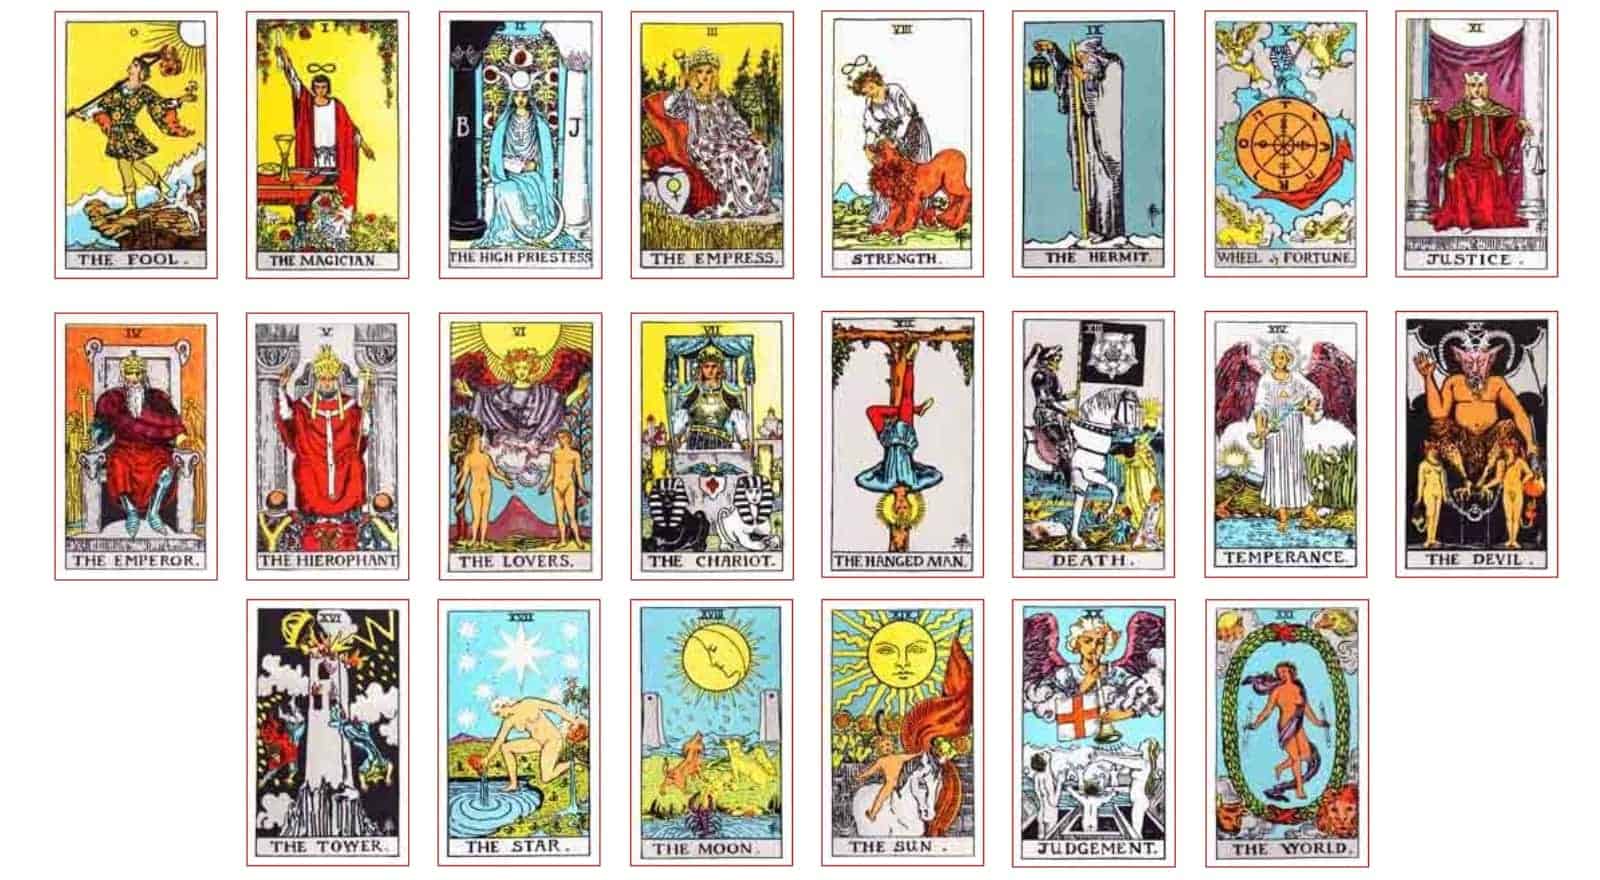 De complete lijst met 78 tarotkaarten met hun ware betekenissen